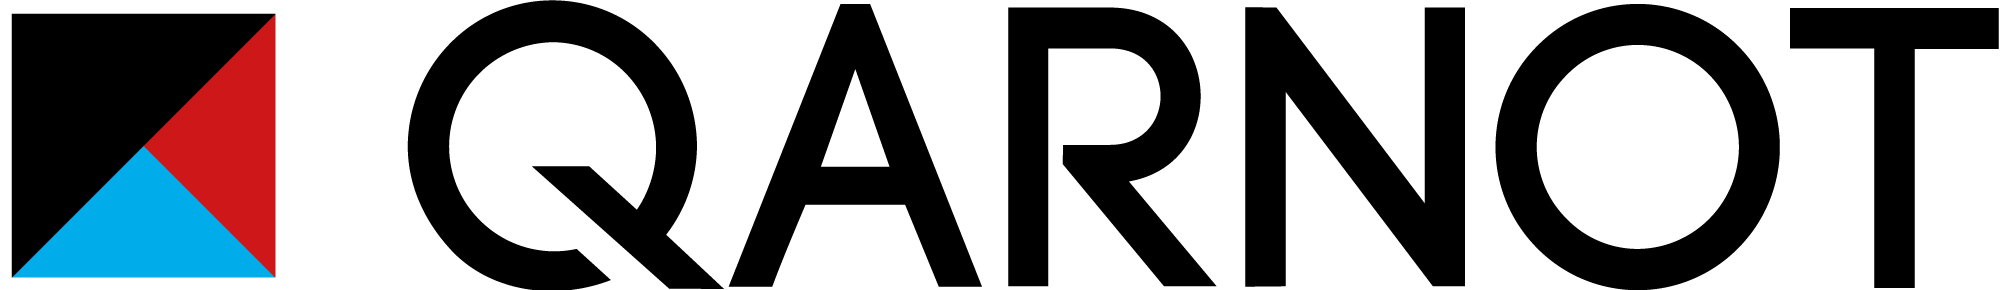 Qarnot logo